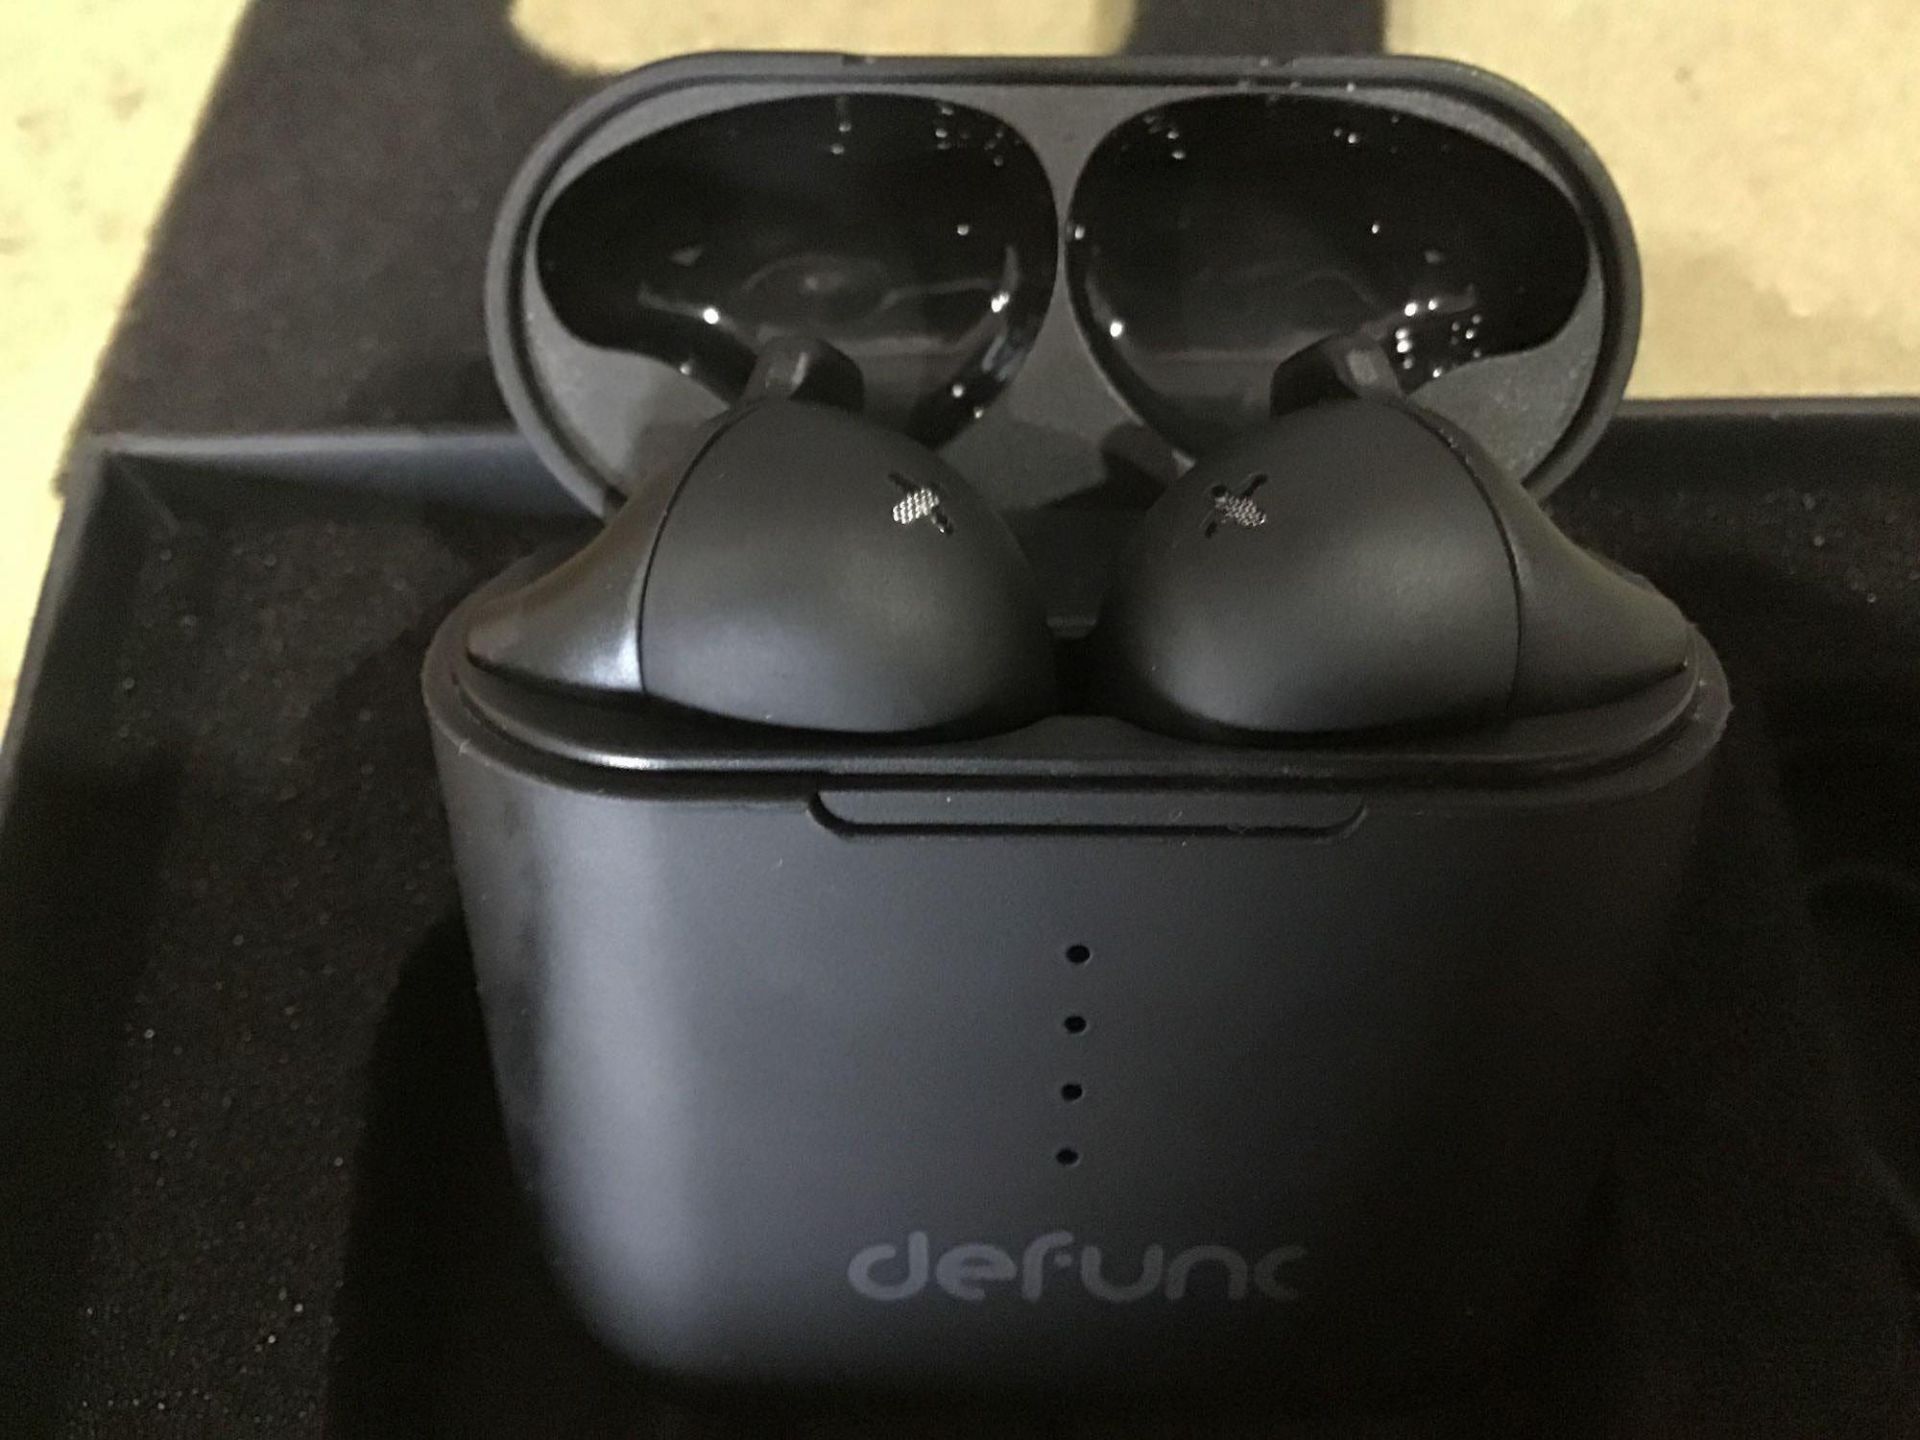 Defunc True Go Wireless Earphones with Dual Mic's-Type C Charging-5.0 Bluetooth Headphones - Image 2 of 6